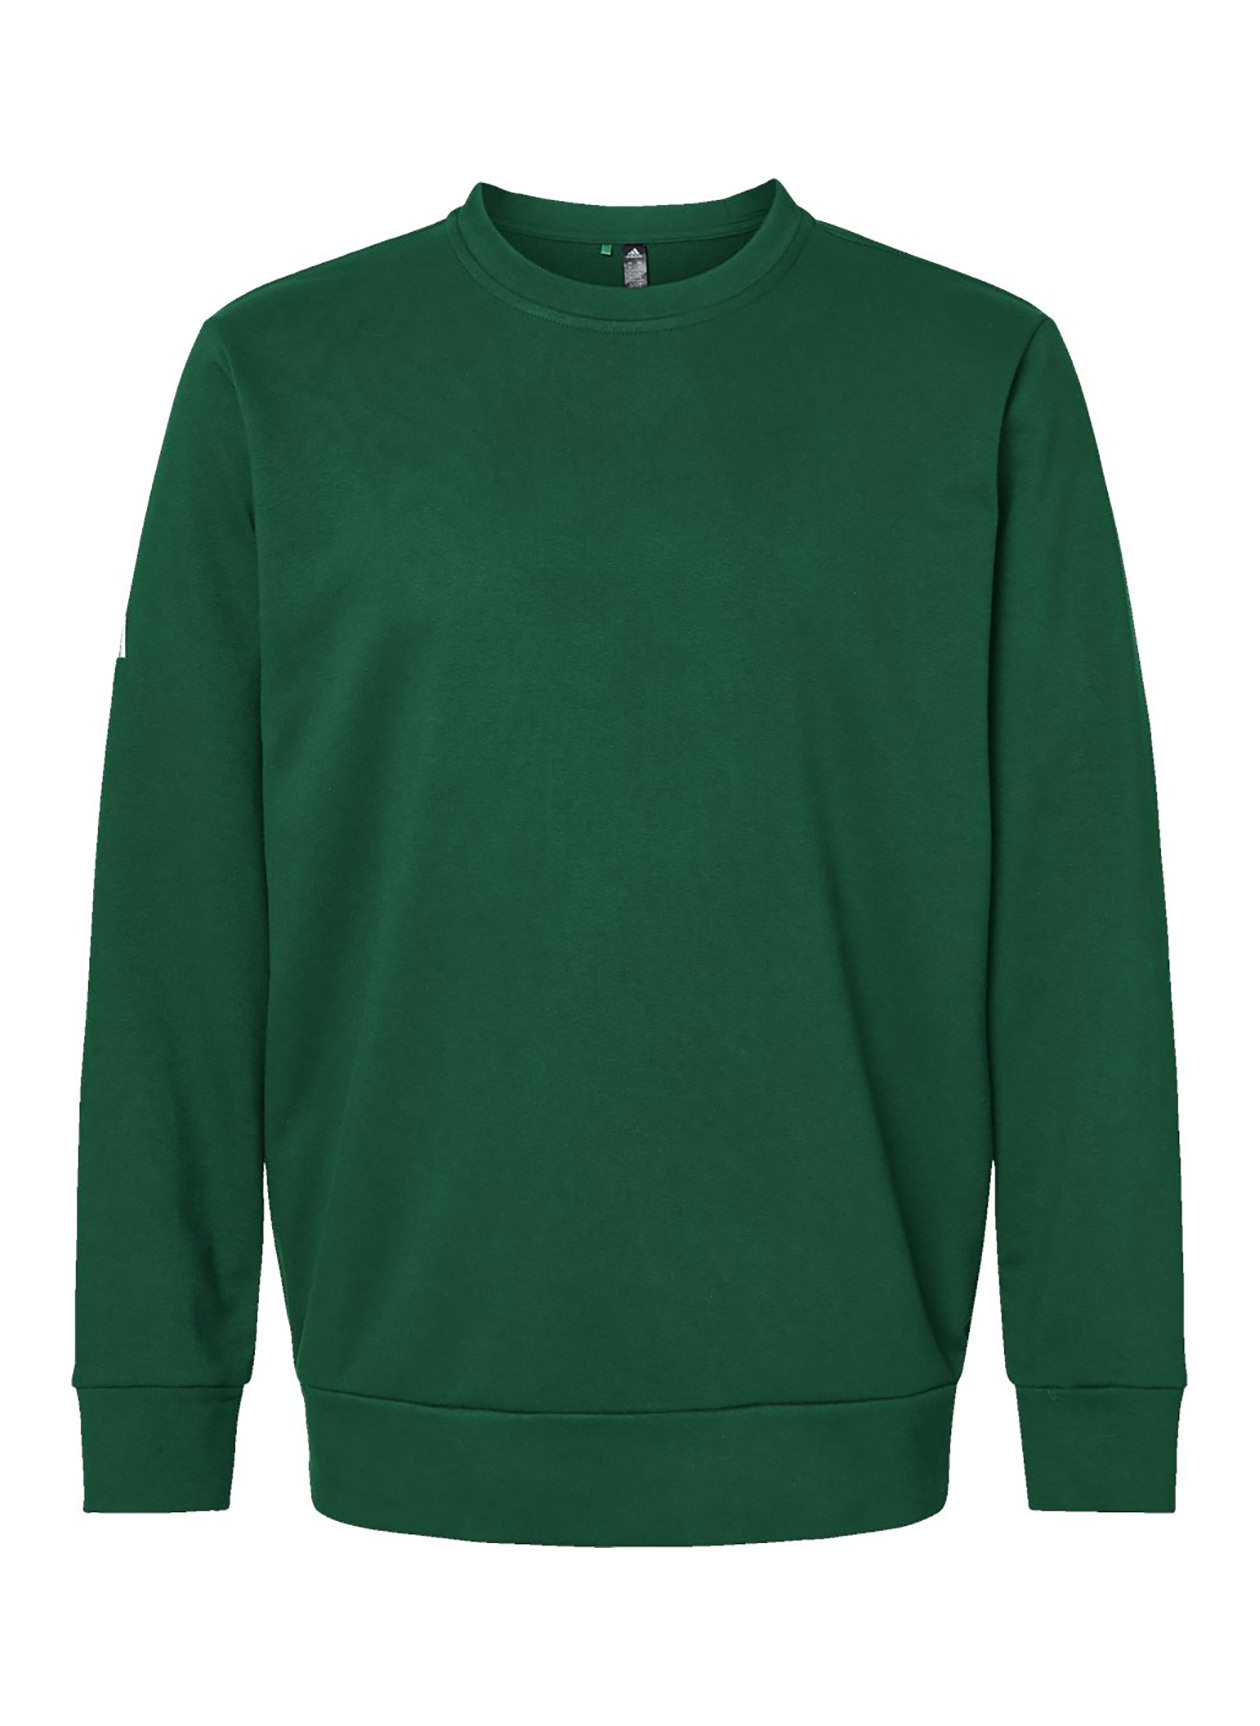 Adidas Men's Collegiate Green Fleece Crewneck Sweatshirt